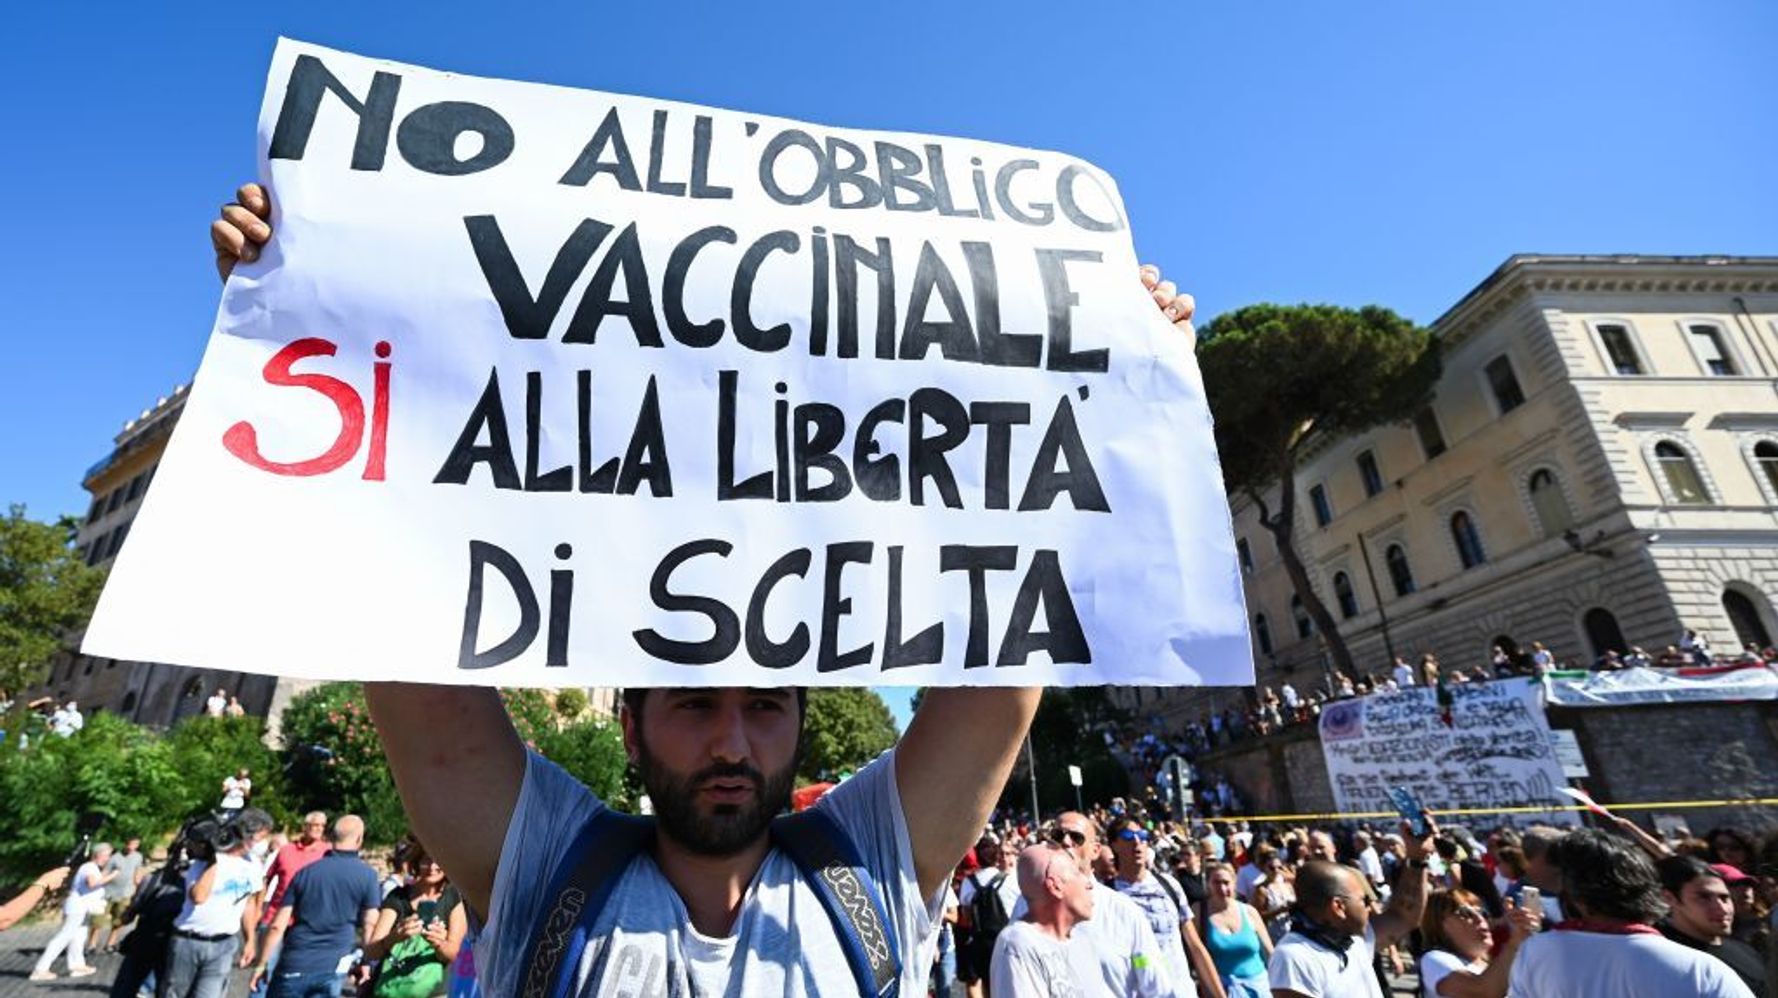 No Vax in piazza senza autorizzazione a San Donà, il Pd: "Sfregio alle vittime del Covid"